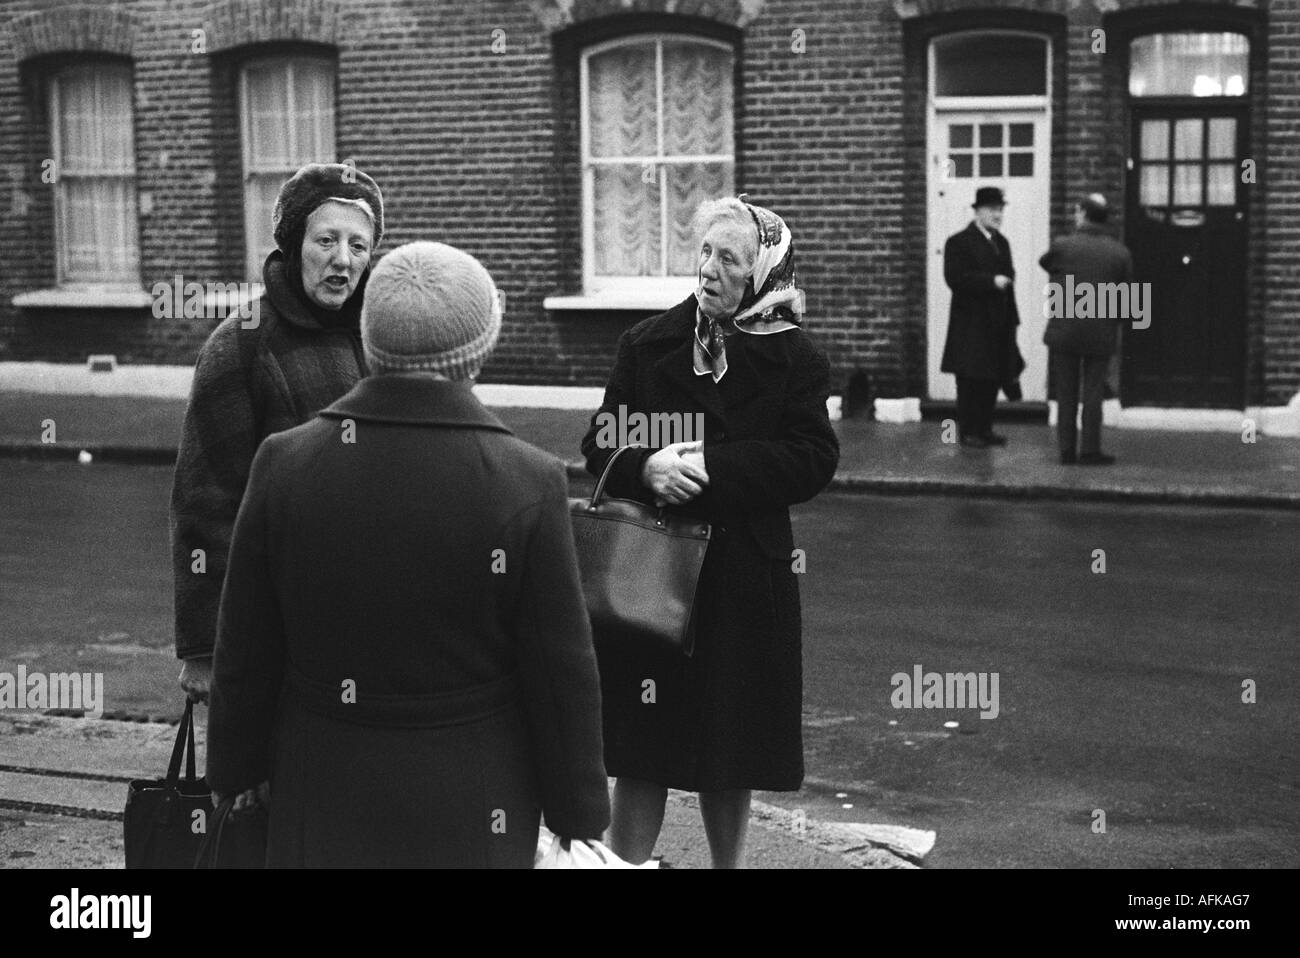 Scène de rue britannique des années 1970 de la classe ouvrière. Trois femmes d'âge moyen parlant dans leur route South London Angleterre des années 1976 1970 Royaume-Uni HOMER SYKES Banque D'Images